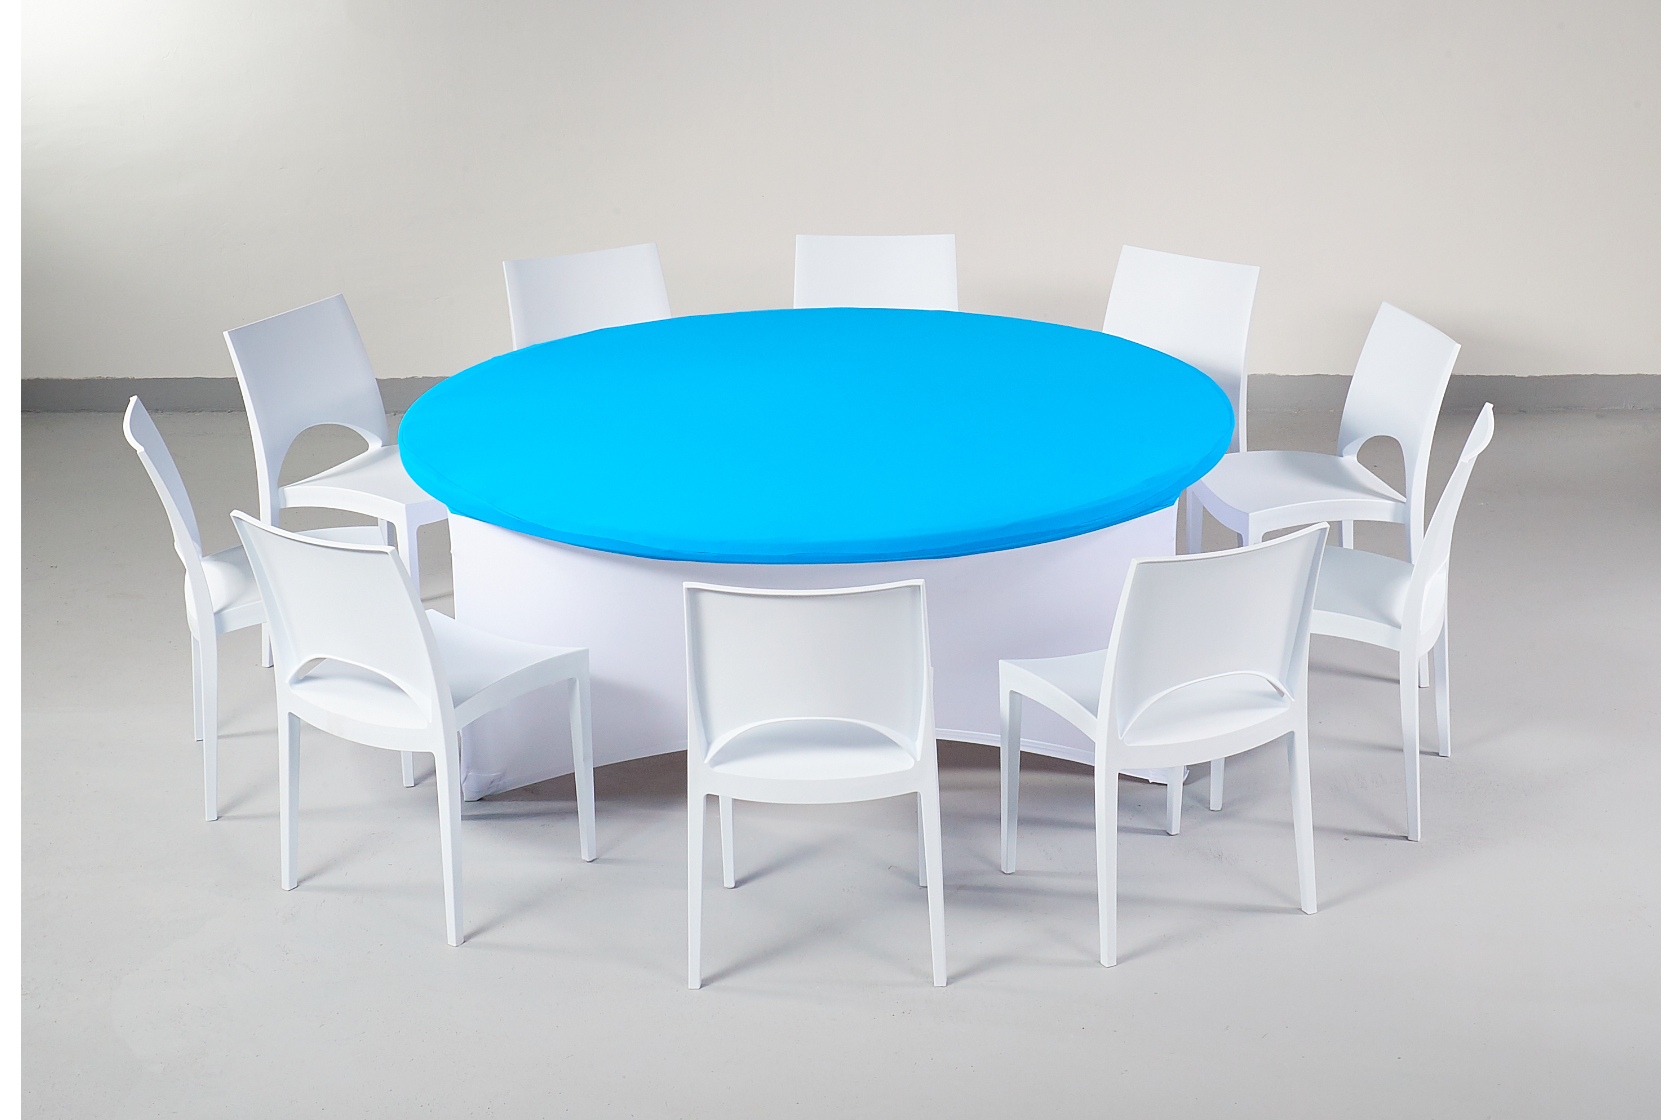 Fehér spandex körasztal huzat+ dell kék kupak